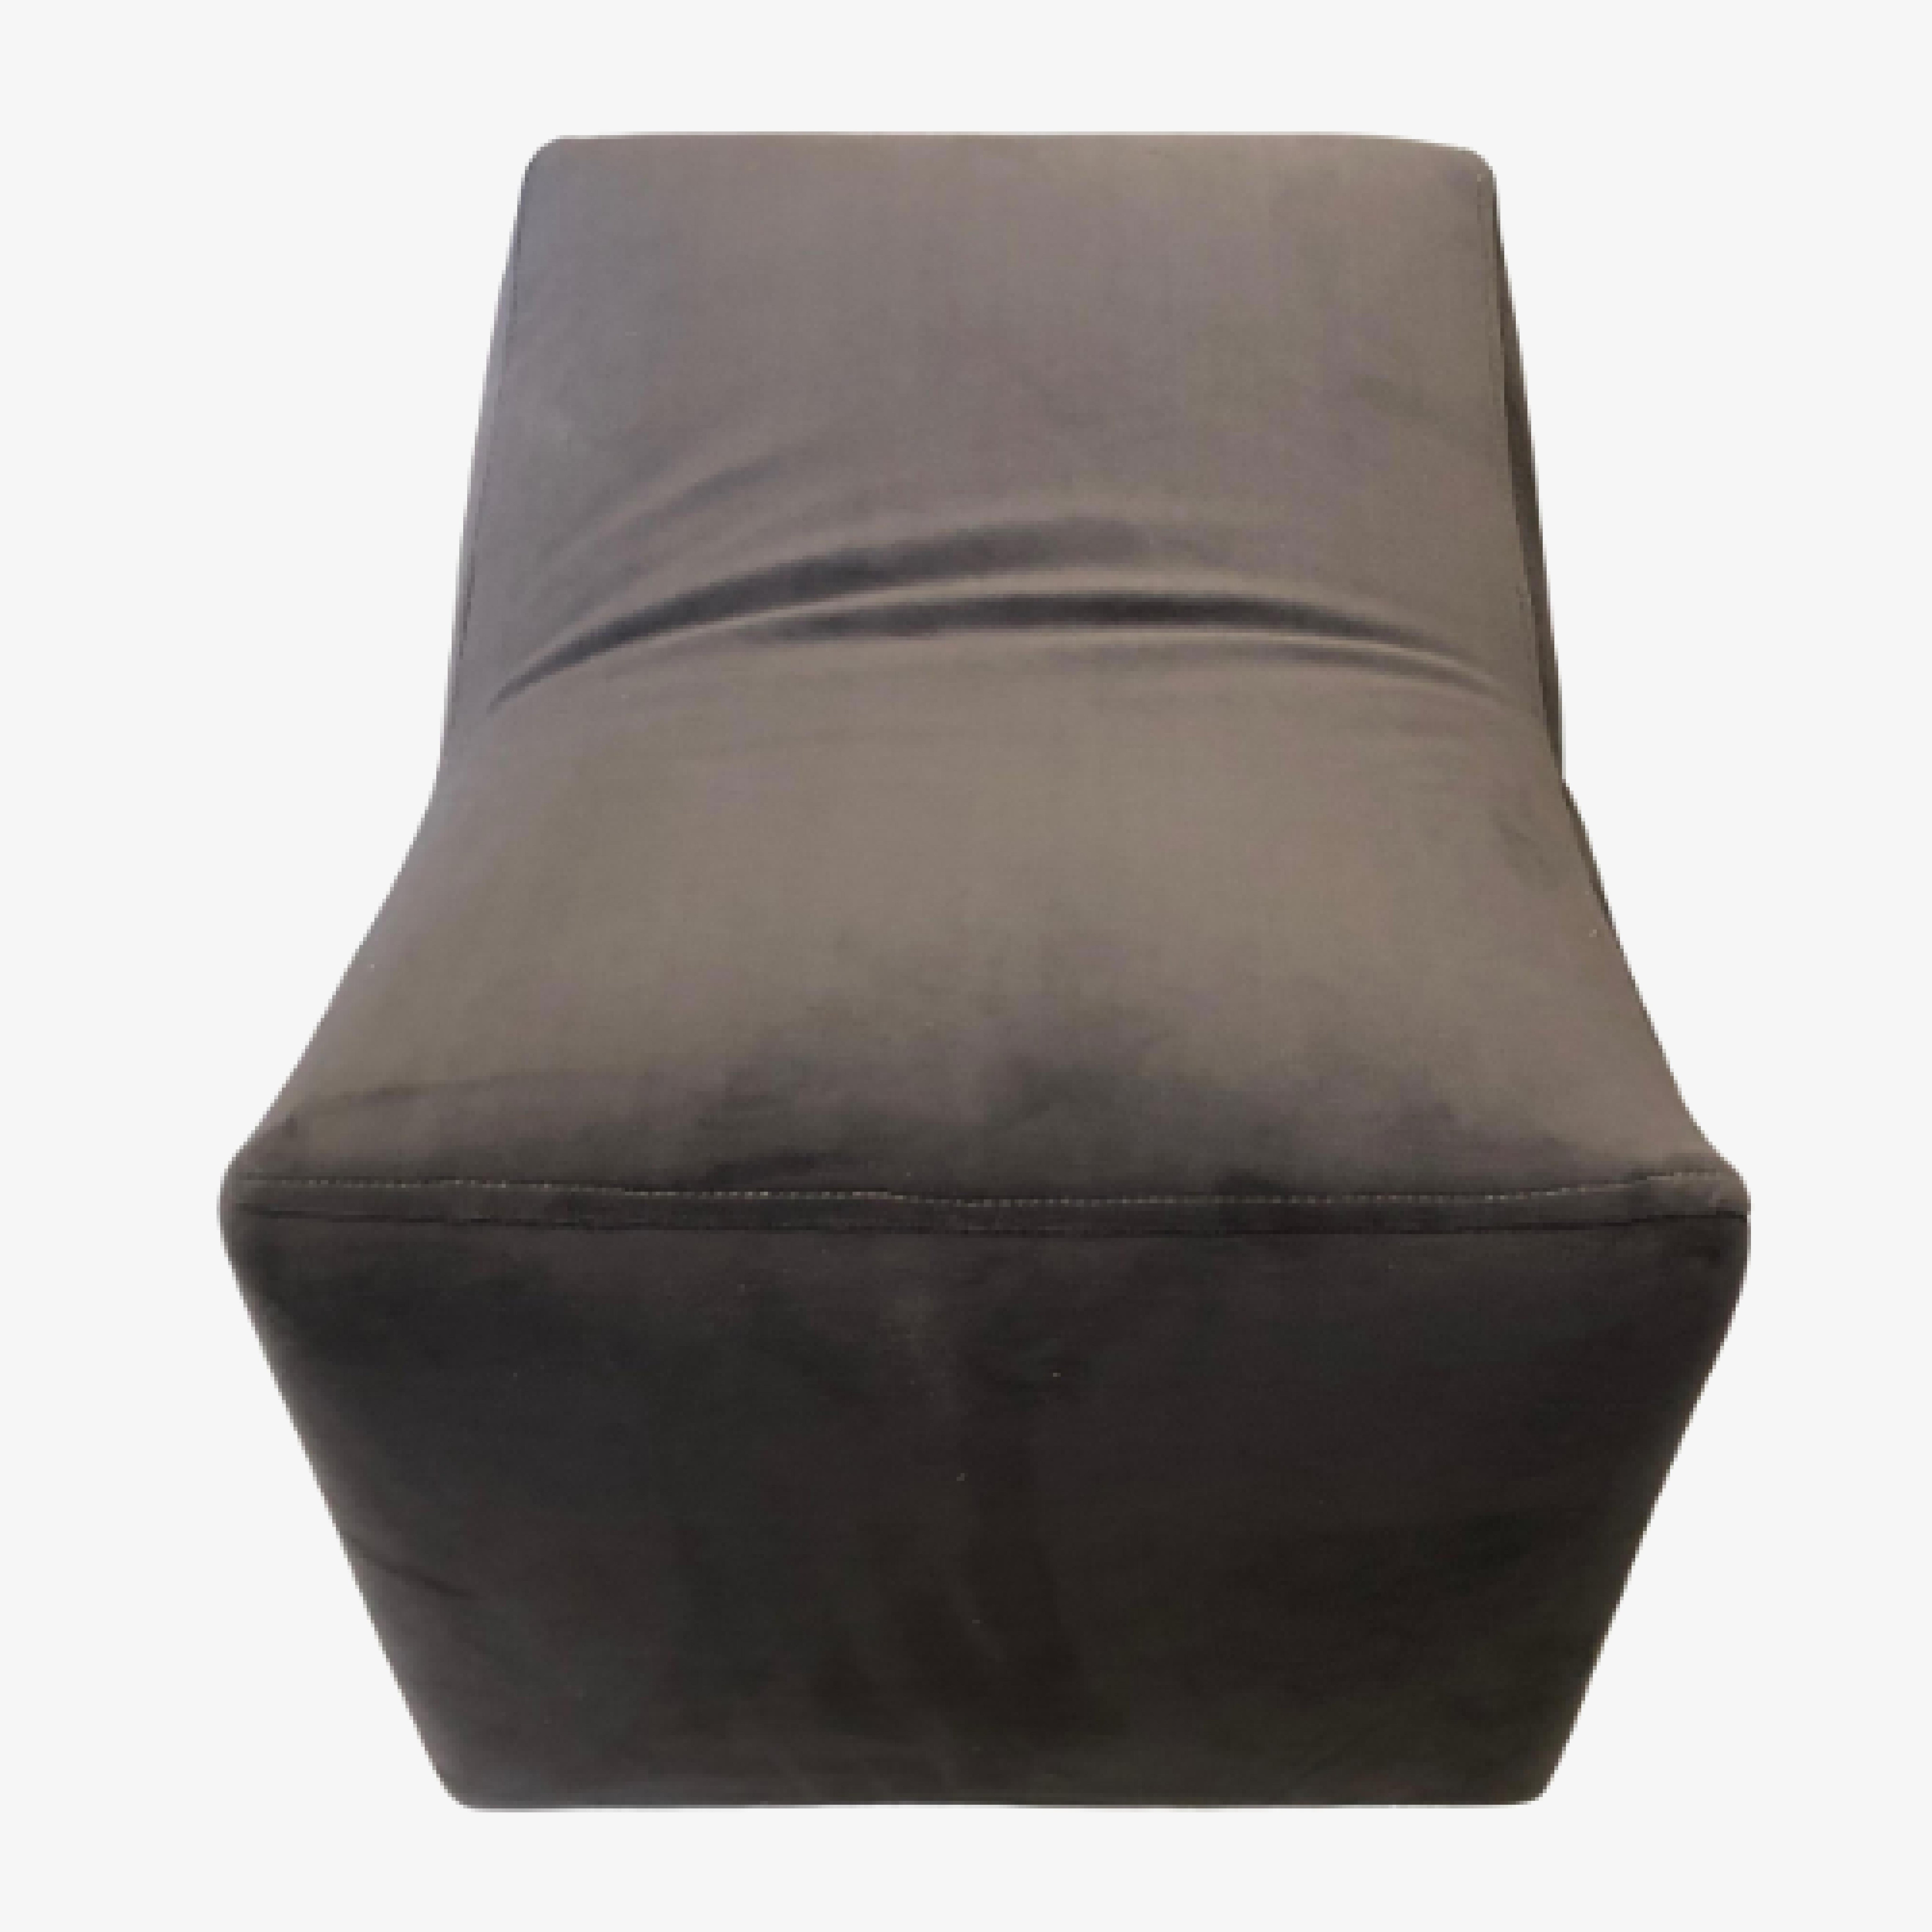 Le pouf Saddle a été conçu en 1965 par le grand designer de meubles modernes Milo Baughman pour Thayer Coggin. Ce pouf est moderne et unique, avec une silhouette distinctive, comprenant un cadre avant et arrière élégamment incurvé et des roulettes